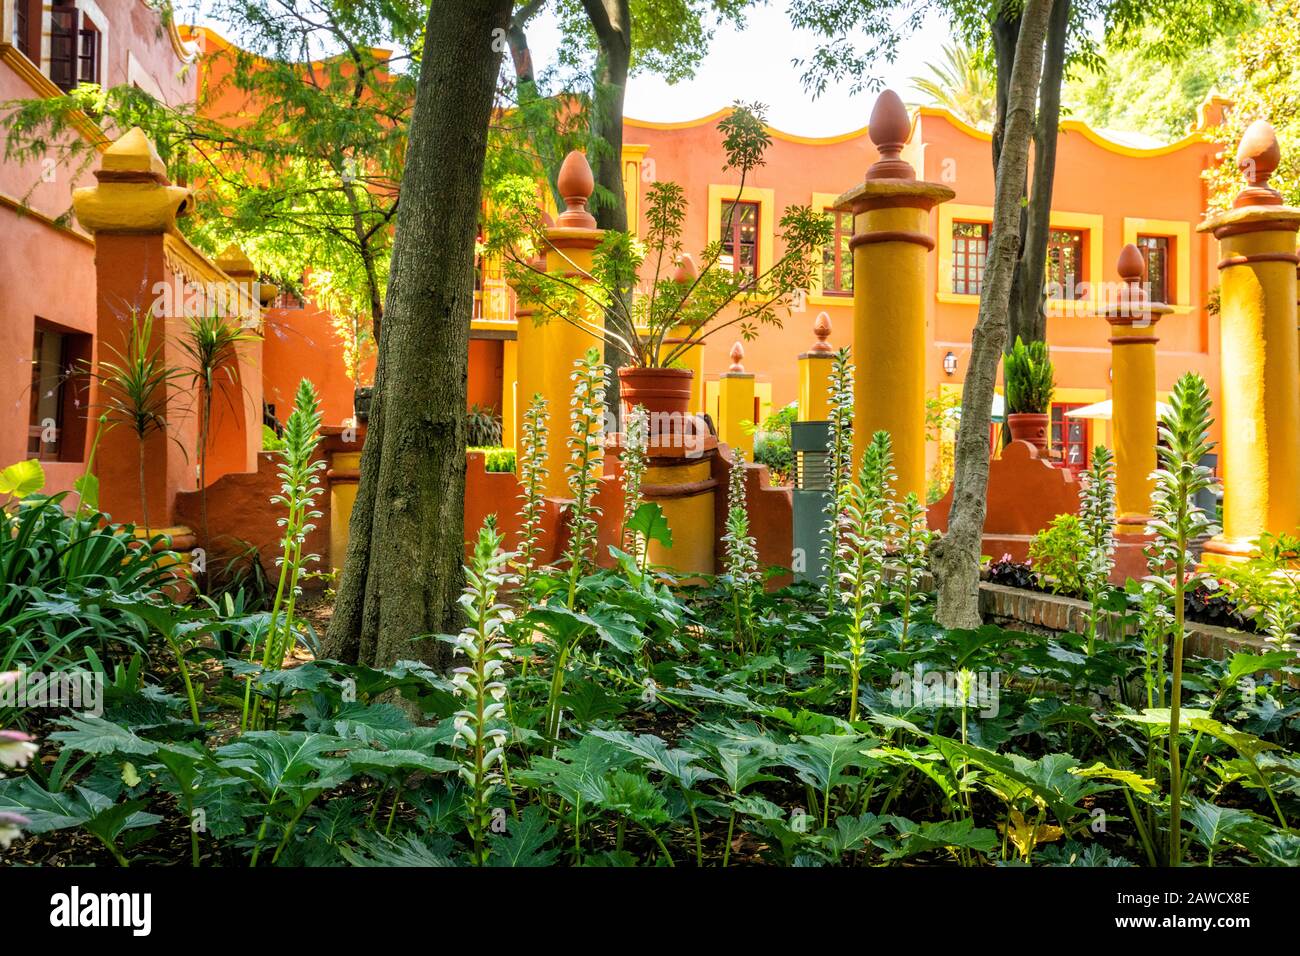 Gärten von Casa Alvarado, der letzten Residenz des berühmten Denkers und Autors Octavio Paz, im Coyoacan-Viertel von Mexiko-Stadt. Stockfoto